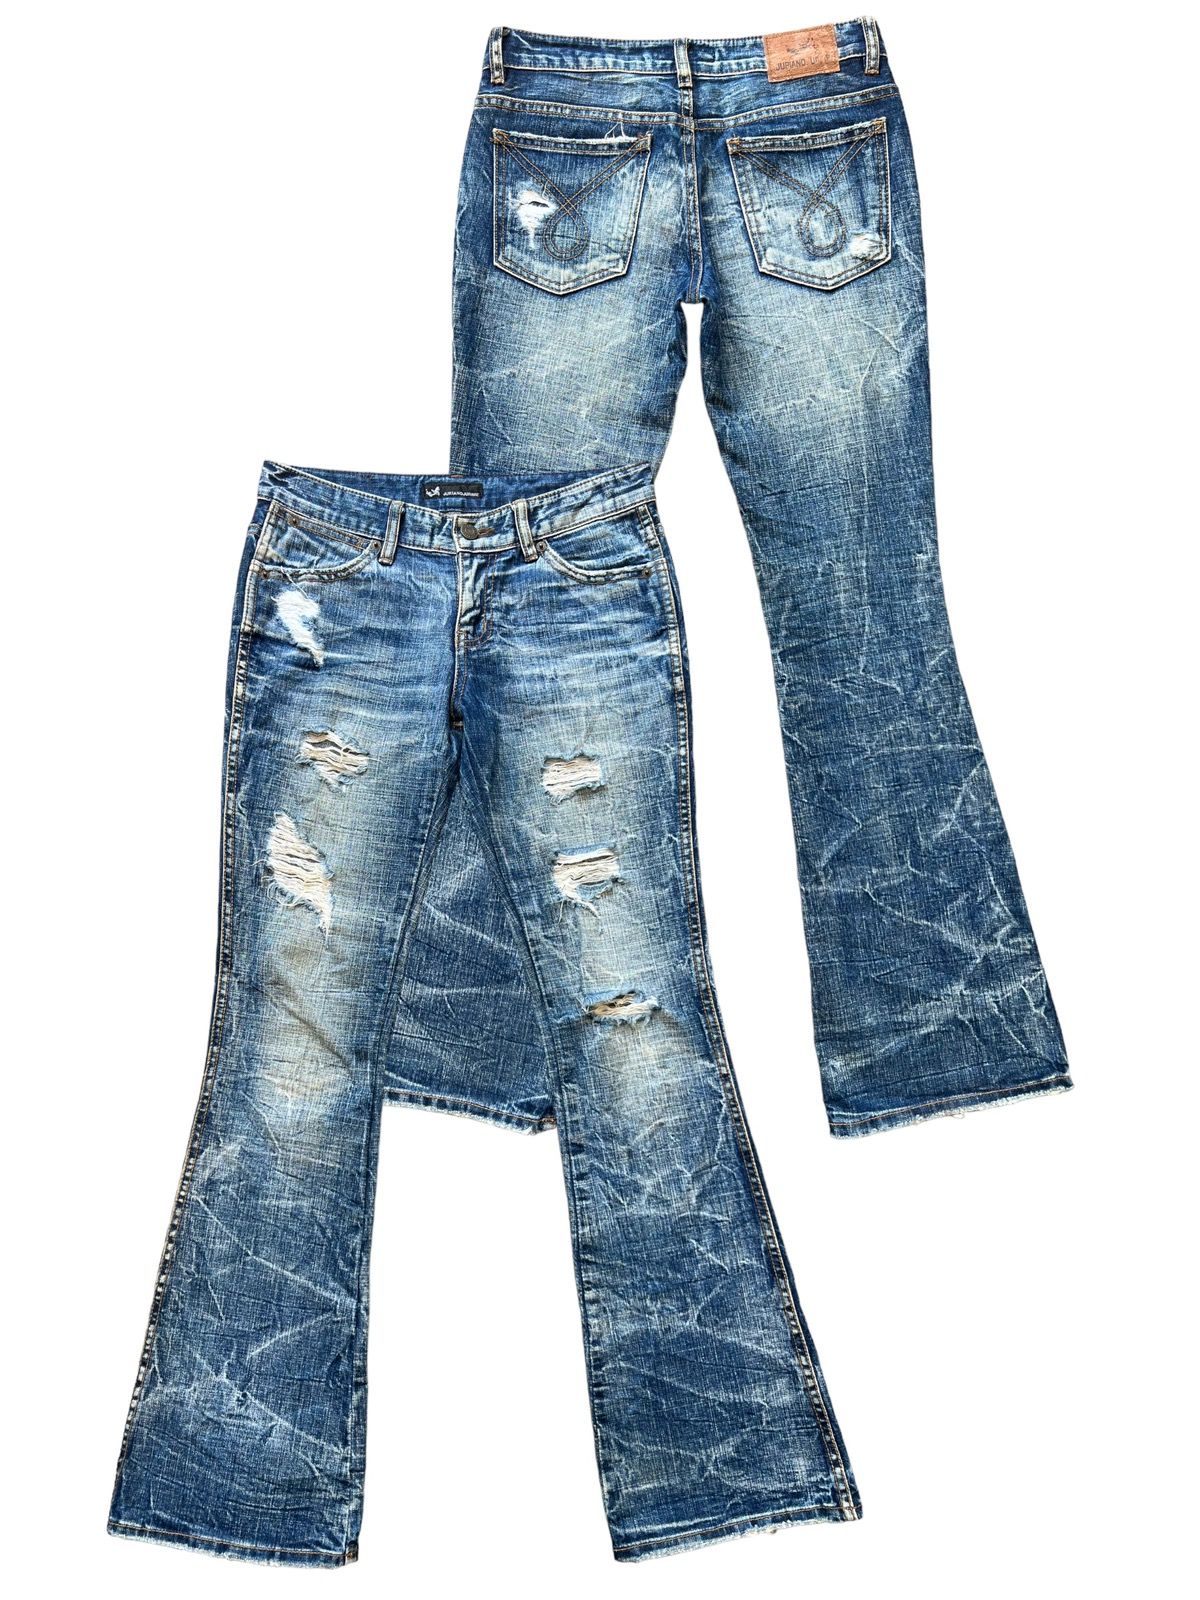 Distressed Denim - Juriano Jurrie Distressed Boot Cut Flare Denim Jeans 29x31 - 1